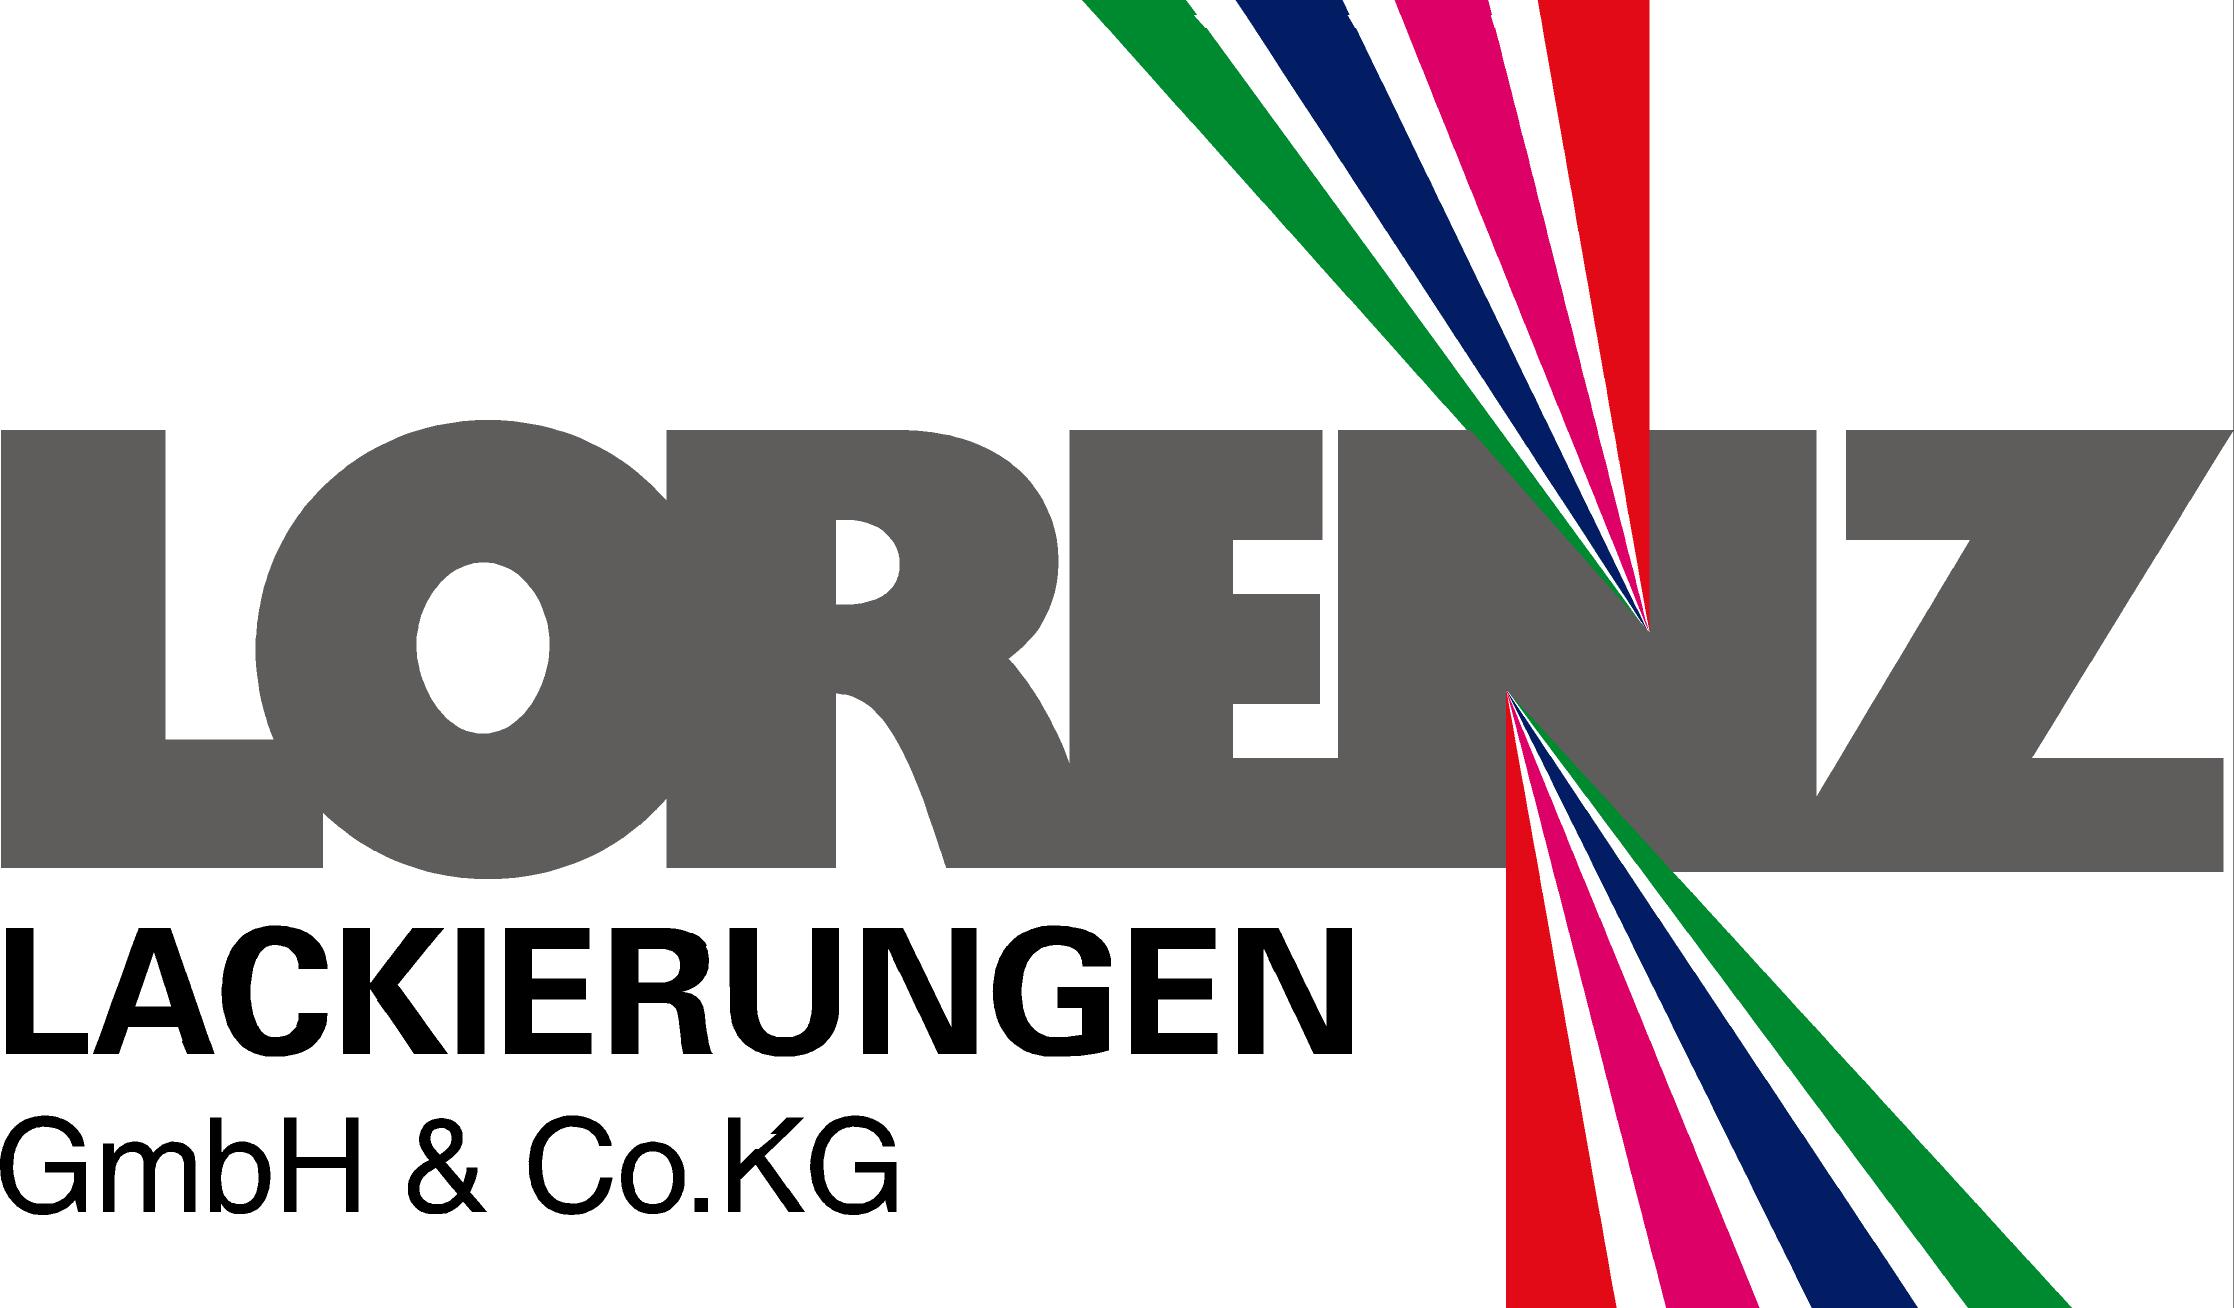 Lorenz Lackierungen GmbH & Co.KG